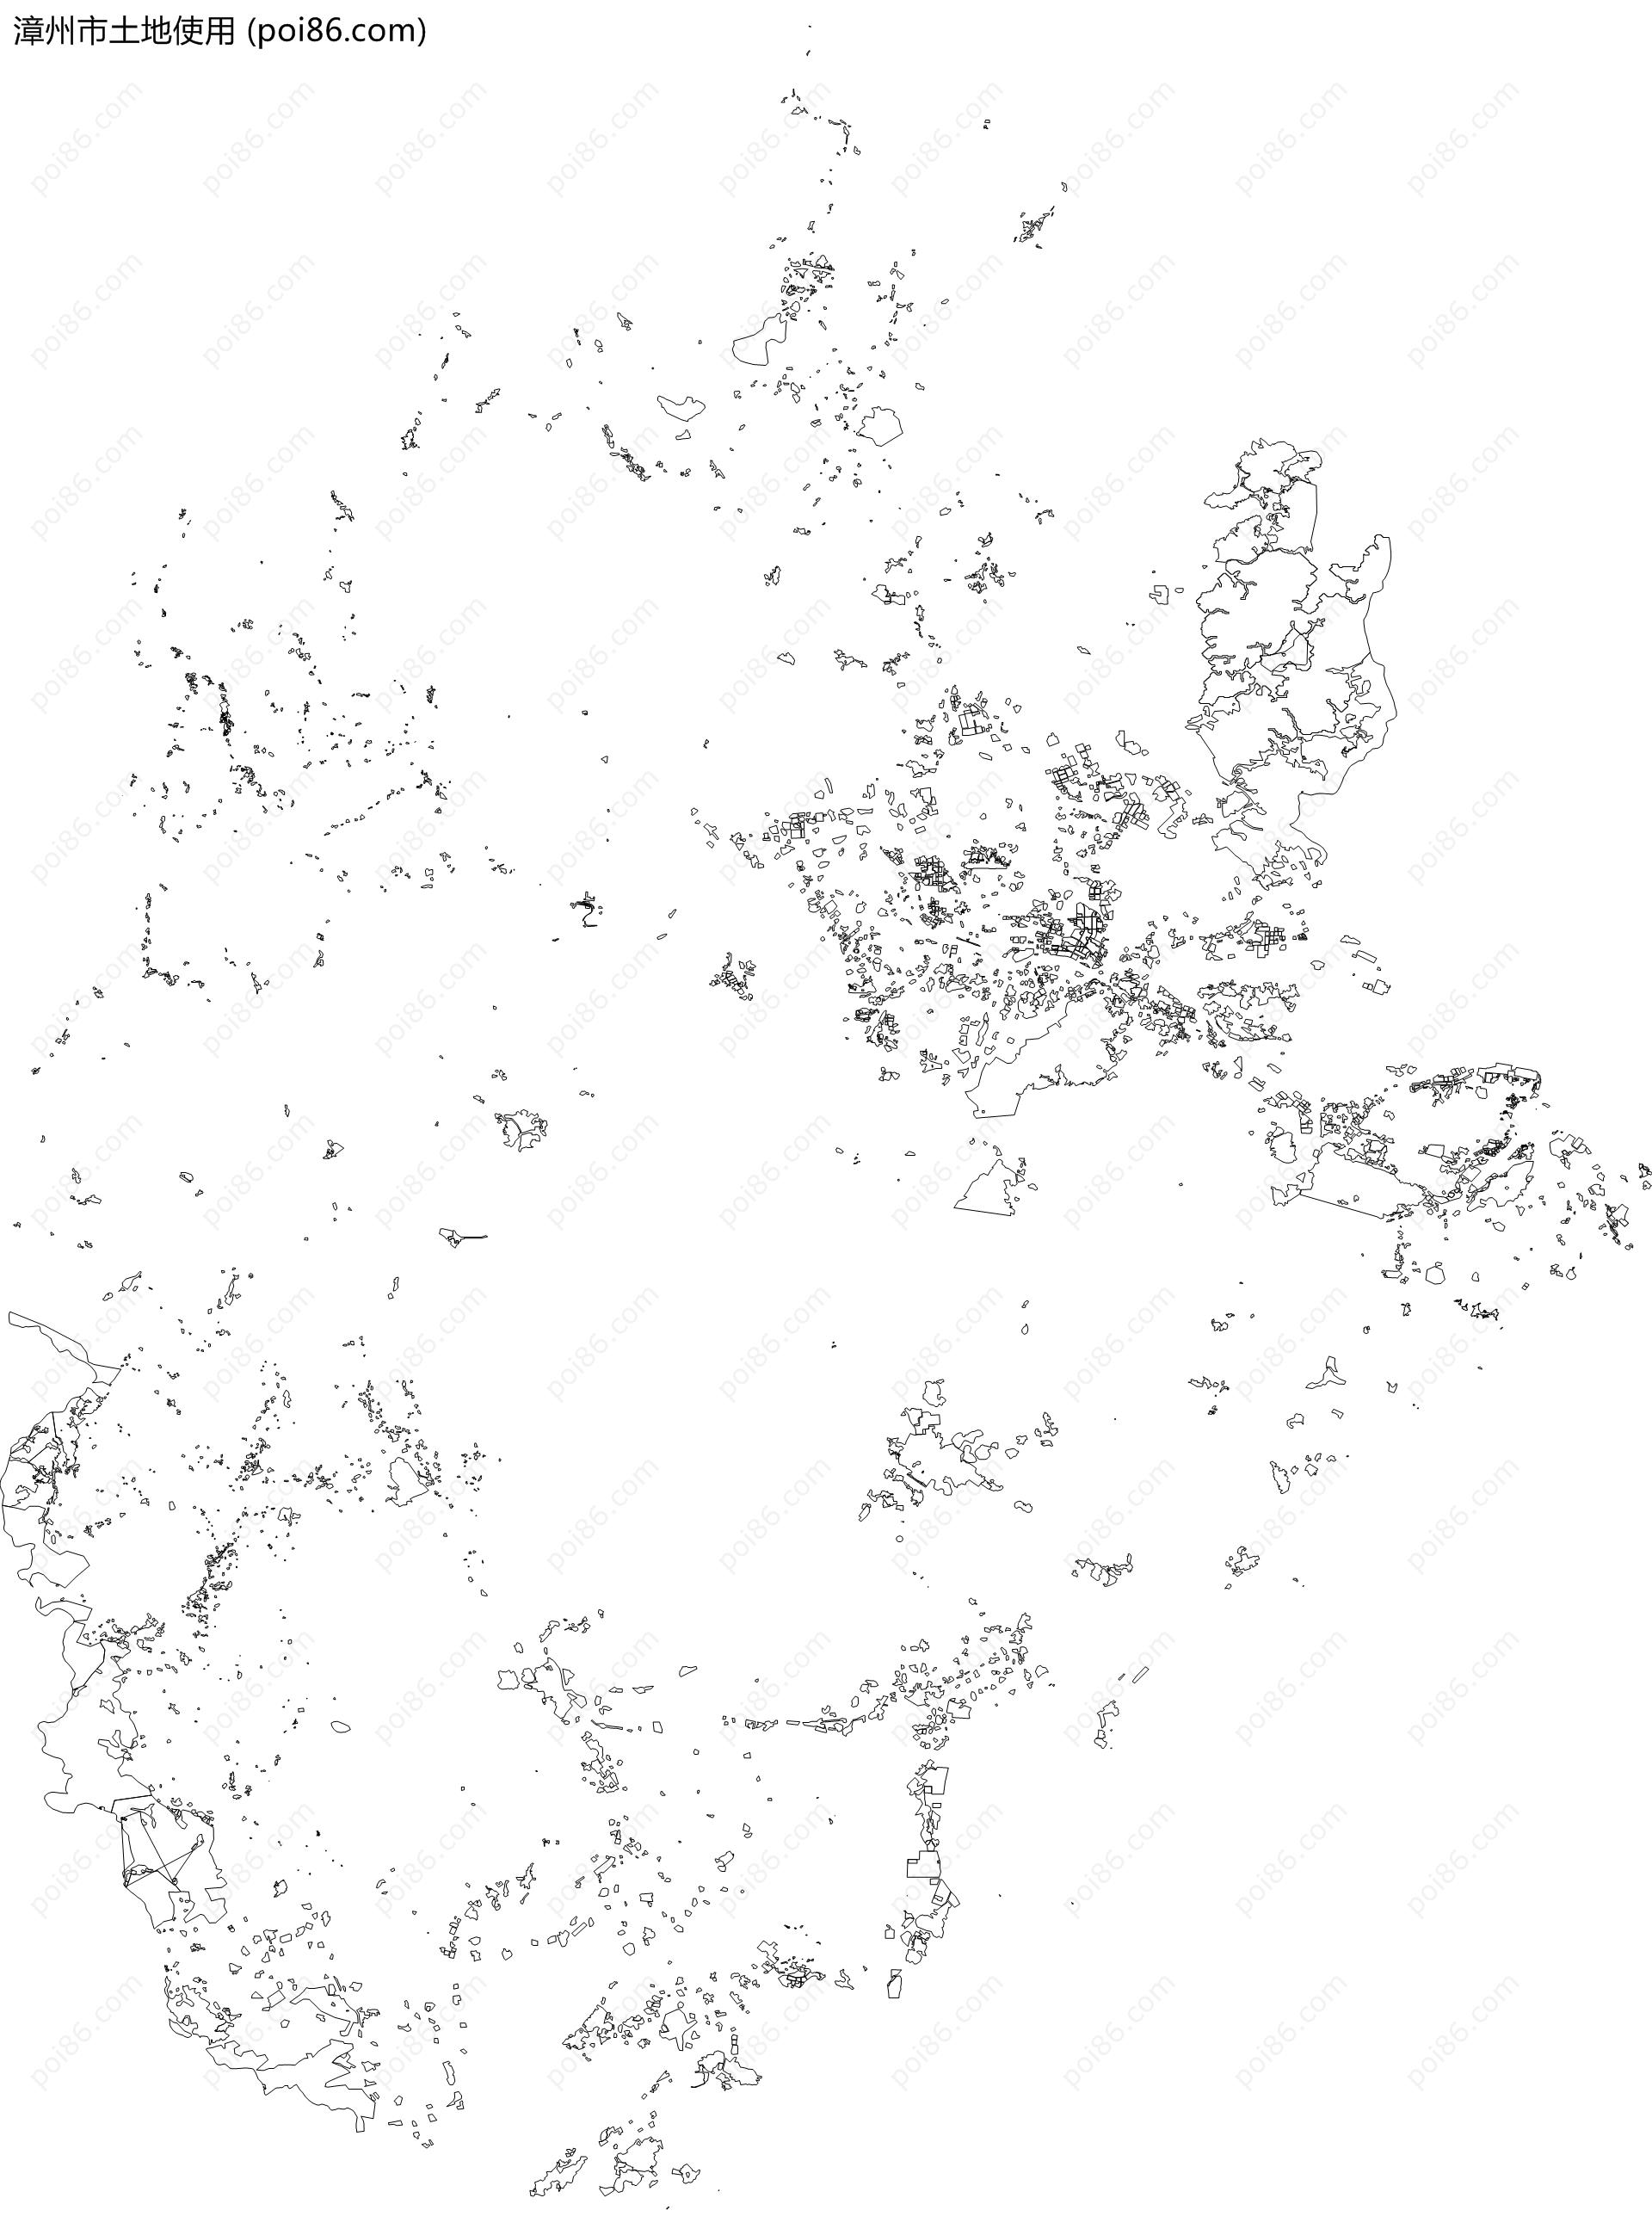 漳州市土地使用地图